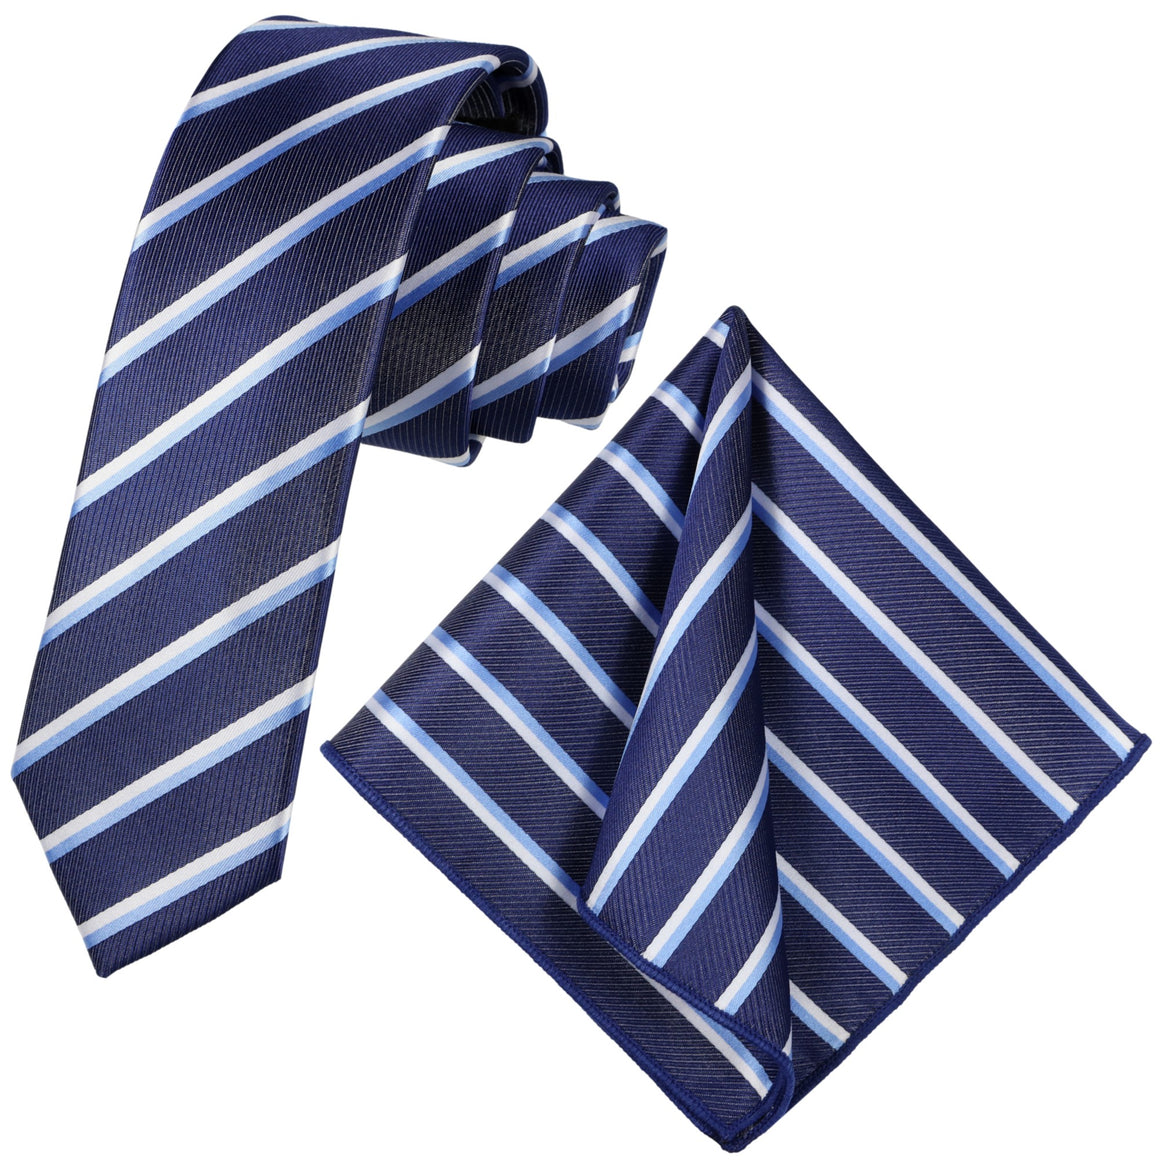 GASSANI Set di 2 cravatte a righe blu in acciaio, cravatta da uomo in jacquard a righe bianche e azzurre sottili 6 cm, fazzoletto da taschino